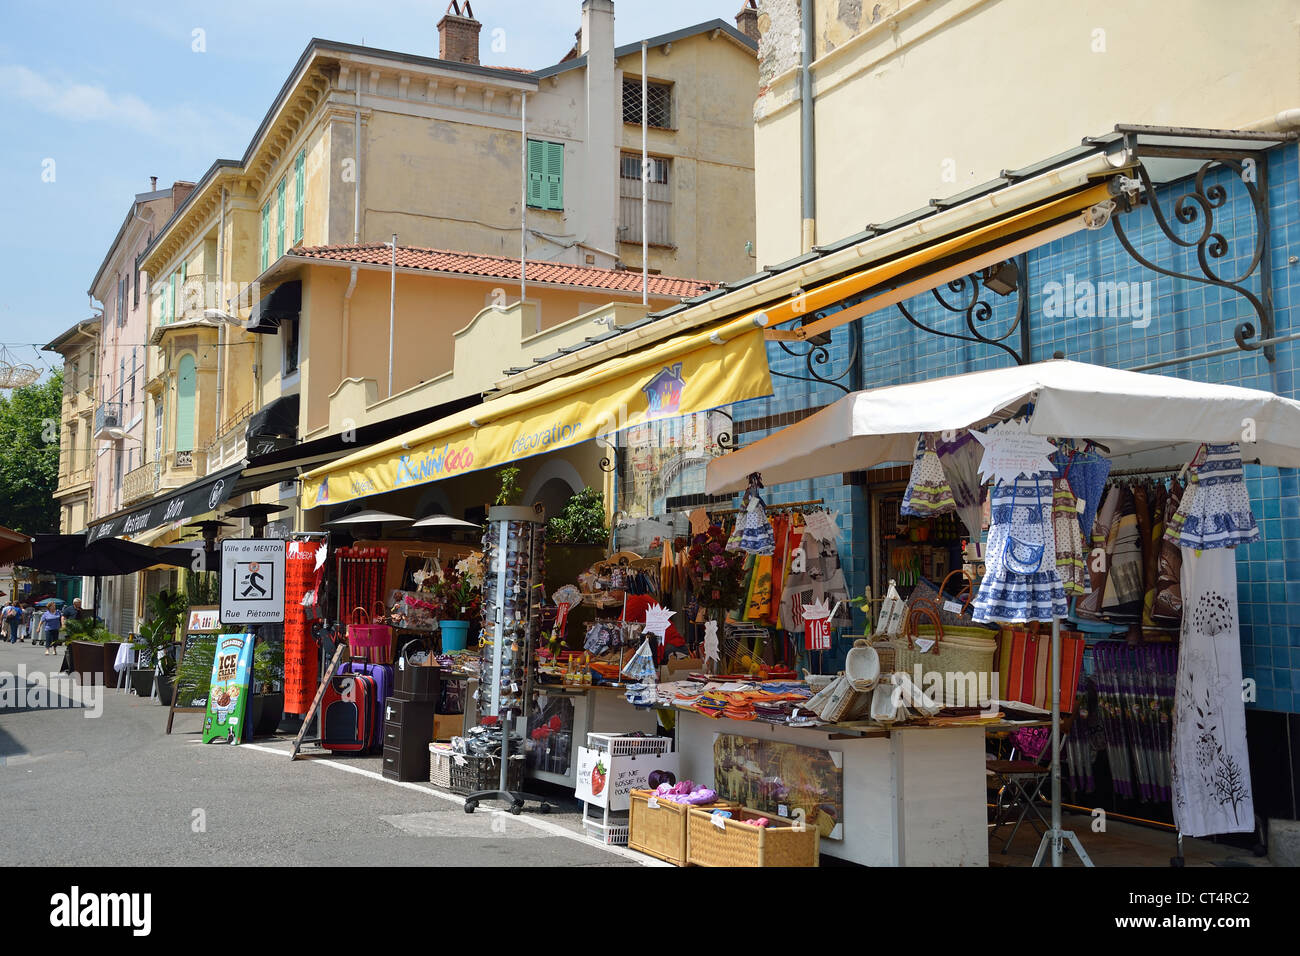 Souvenir shop in old town, Menton, Côte d'Azur, Alpes-Maritimes, Provence-Alpes-Côte d'Azur, France Stock Photo